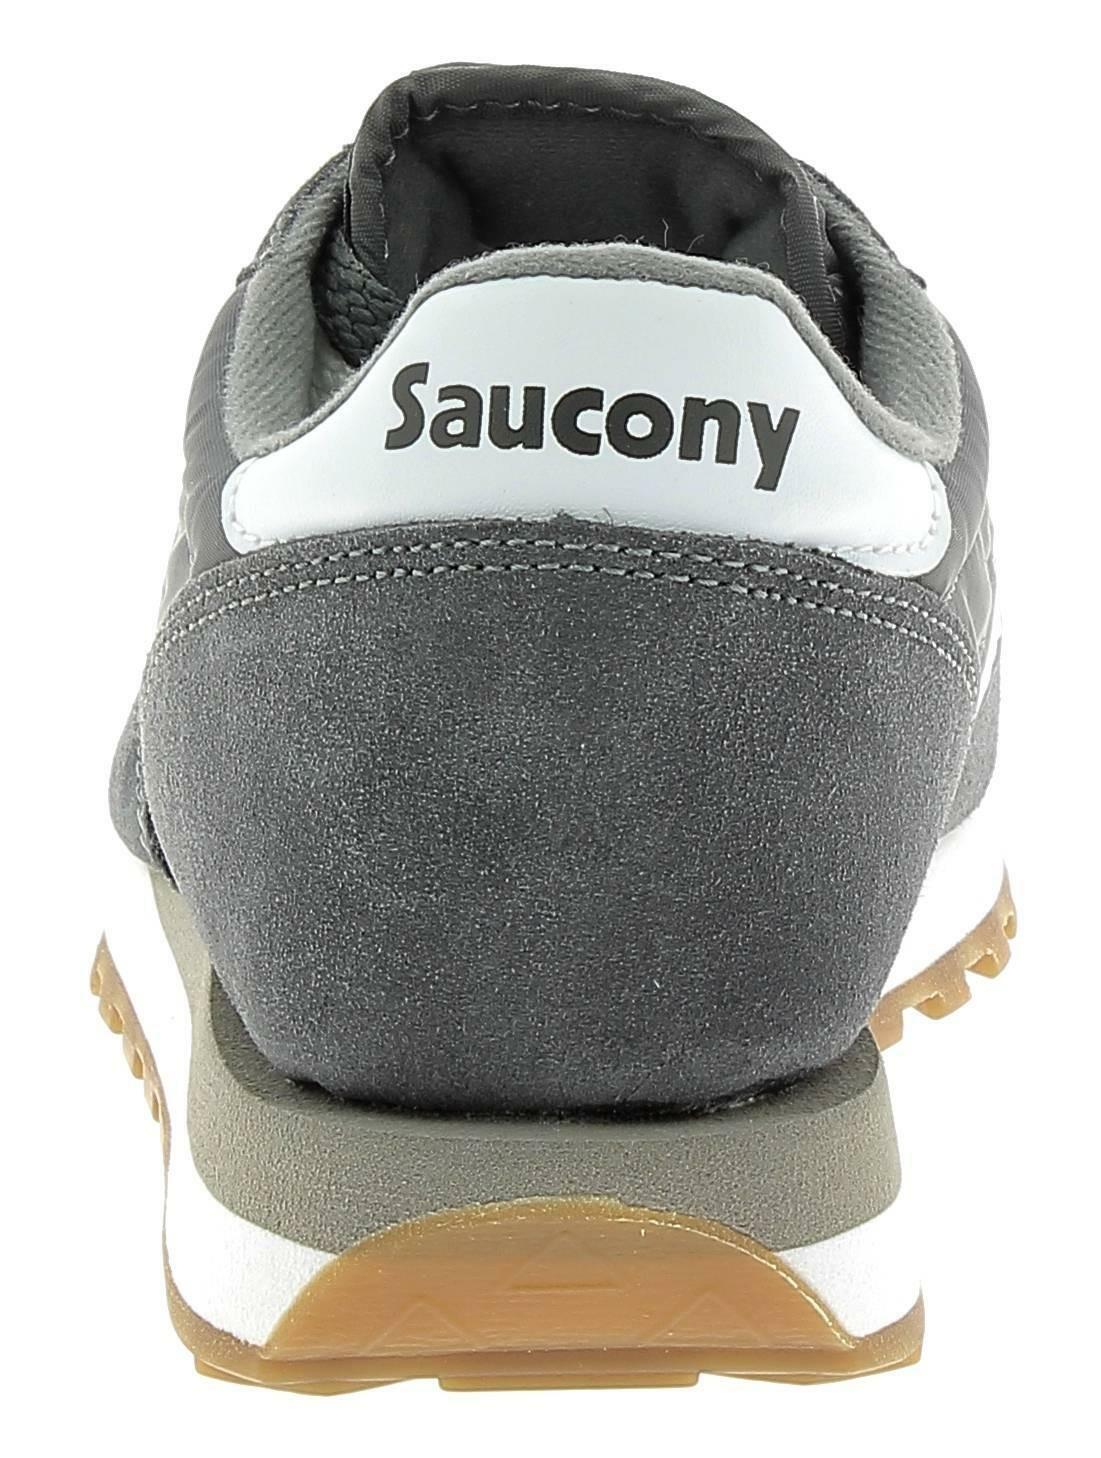 saucony saucony jazz original scarpe uomo grigie s2044434